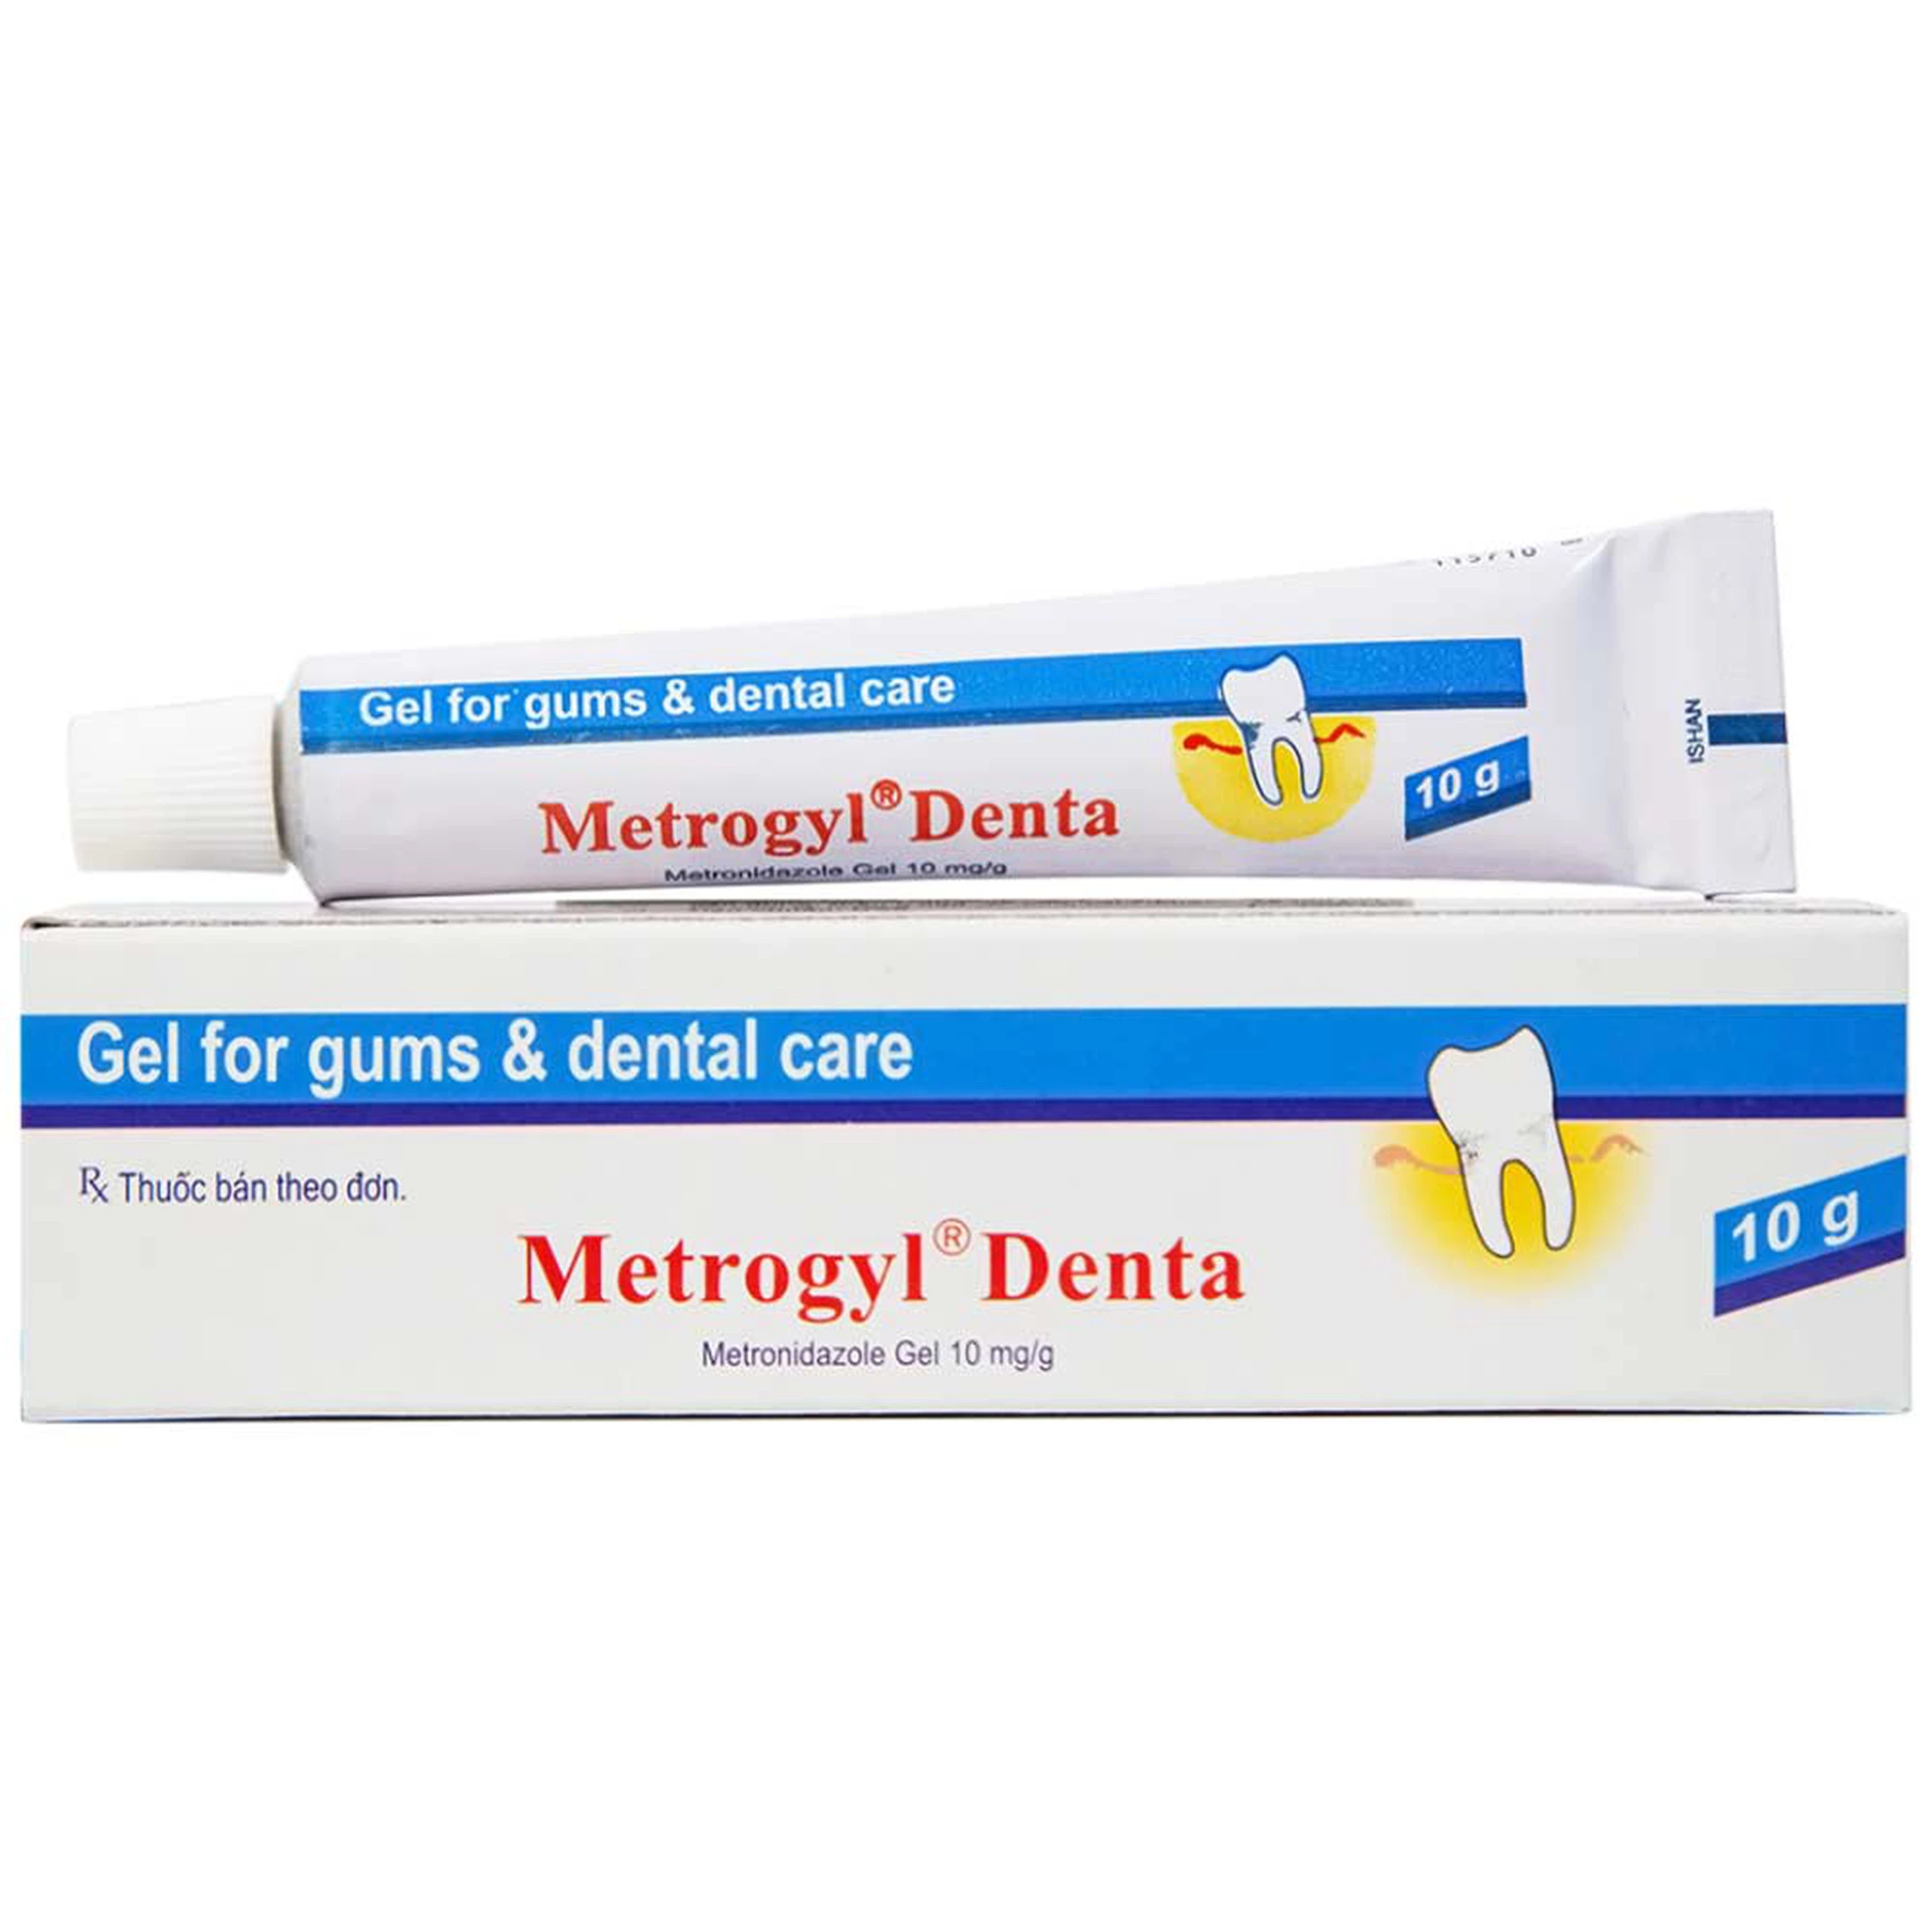 Gel bôi nha khoa Metrogyl Denta Unique Pharma điều trị các bệnh nha chu mãn tính (10g)